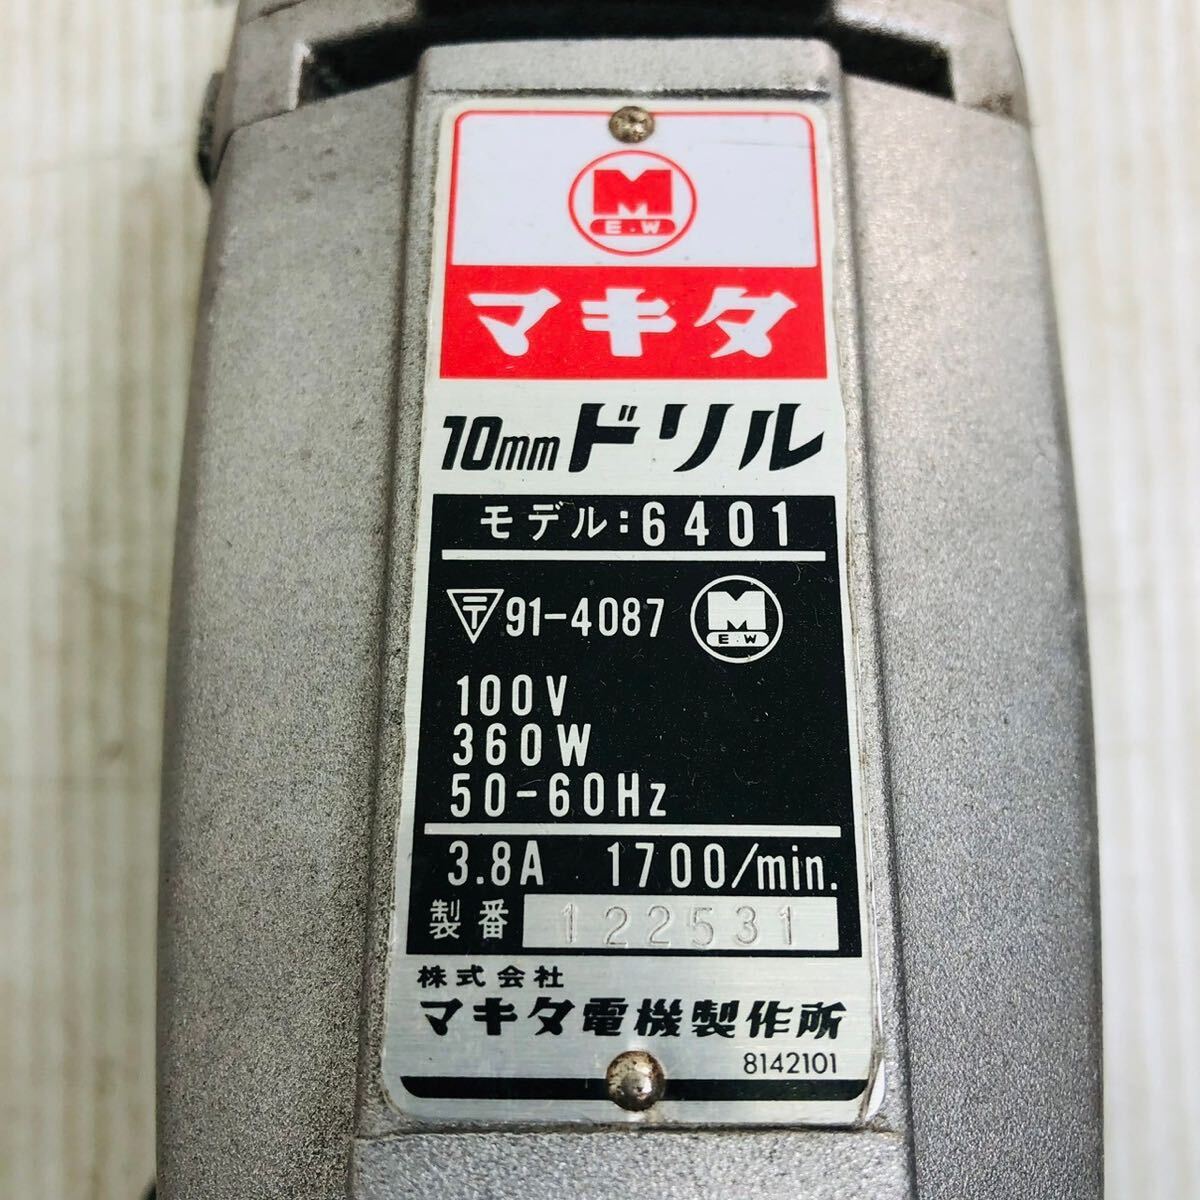 ★☆マキタ makita 10mm ドリル モデル 6401 電気 電動 工具 大工道具 DIY 動作確認済み A☆★_画像5